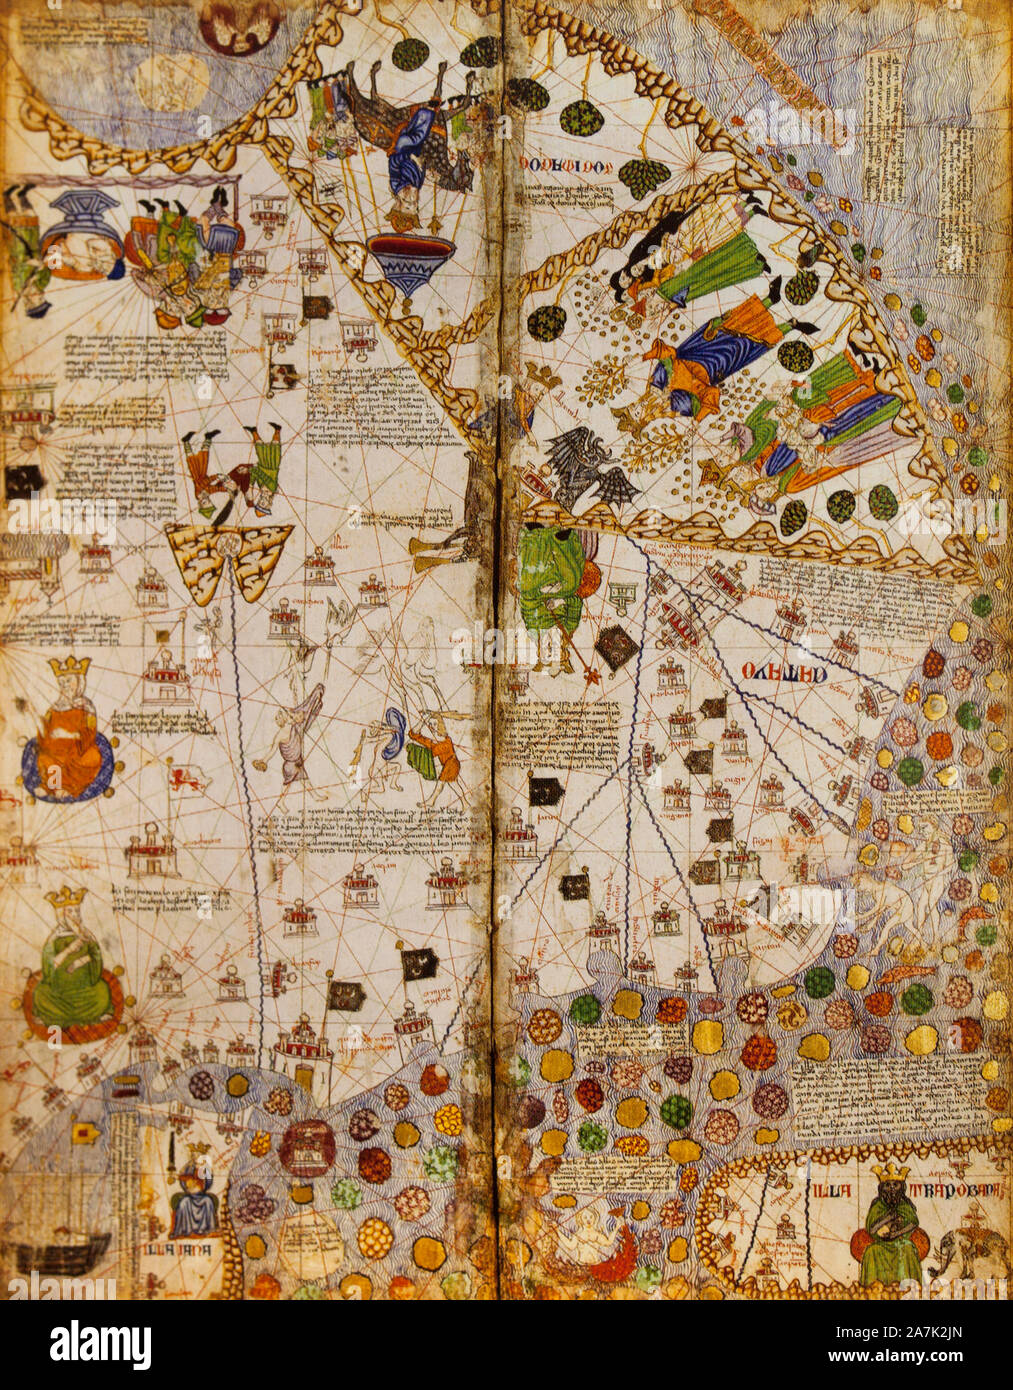 Katalanischer Atlas, mittelalterliche Weltkarte, erstellt im Jahr 1375. Fragment. Reproduktion im Museum des Hauses von Columbus, Valladolid, Spanien Stockfoto